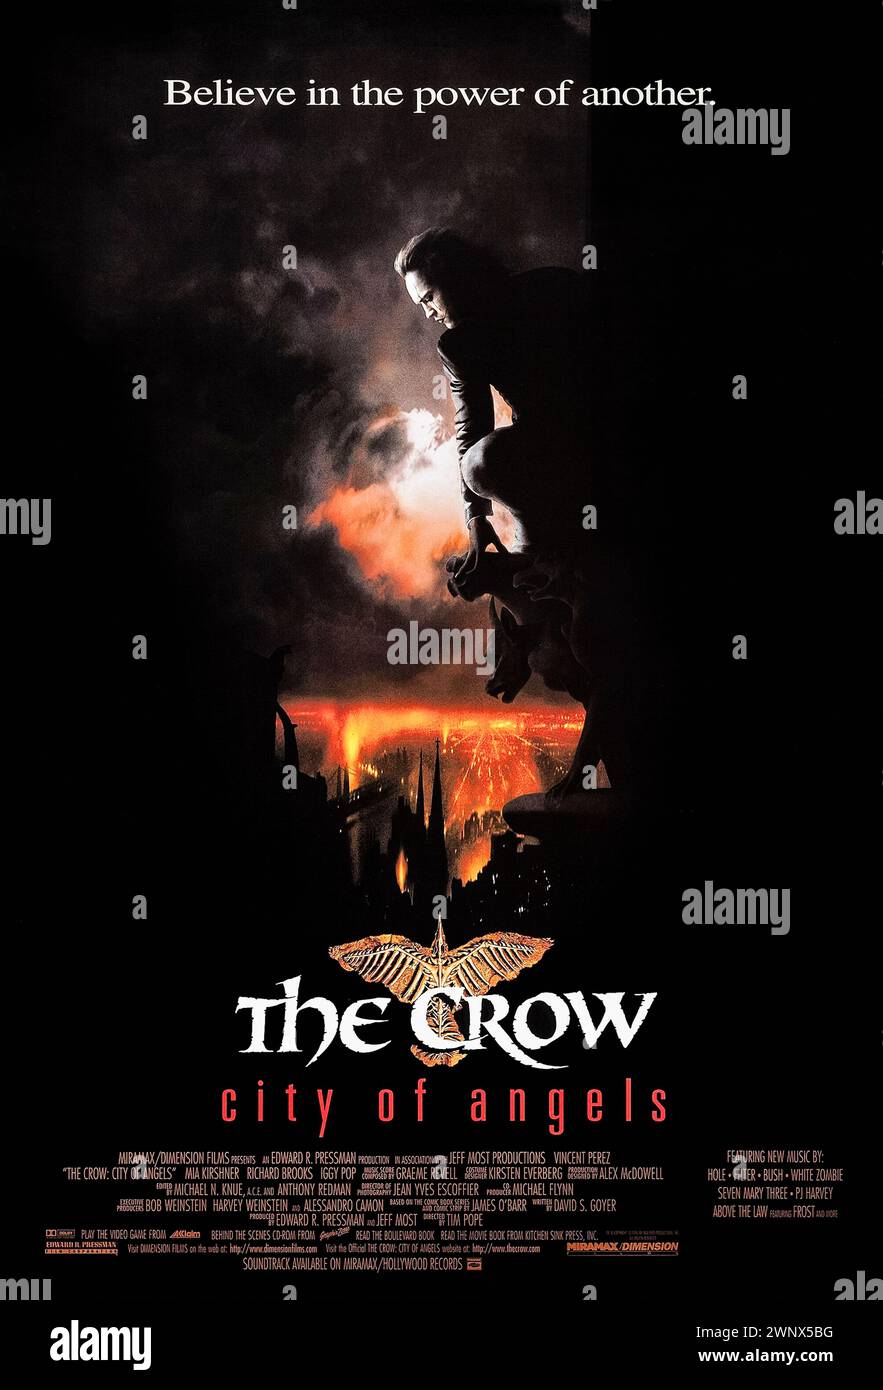 The Crow: City of Angels (1996) unter der Regie von Tim Pope mit Vincent Perez, Mia Kirshner und Richard Brooks. Der Geist der Krähe erweckt einen anderen Mann auf der Suche nach Rache für den Mord an seinem Sohn. Foto eines Original-Posters aus dem Jahr 1996 (US-1-Blatt). ***NUR REDAKTIONELLE VERWENDUNG*** Credit: BFA / Miramax Films Stockfoto